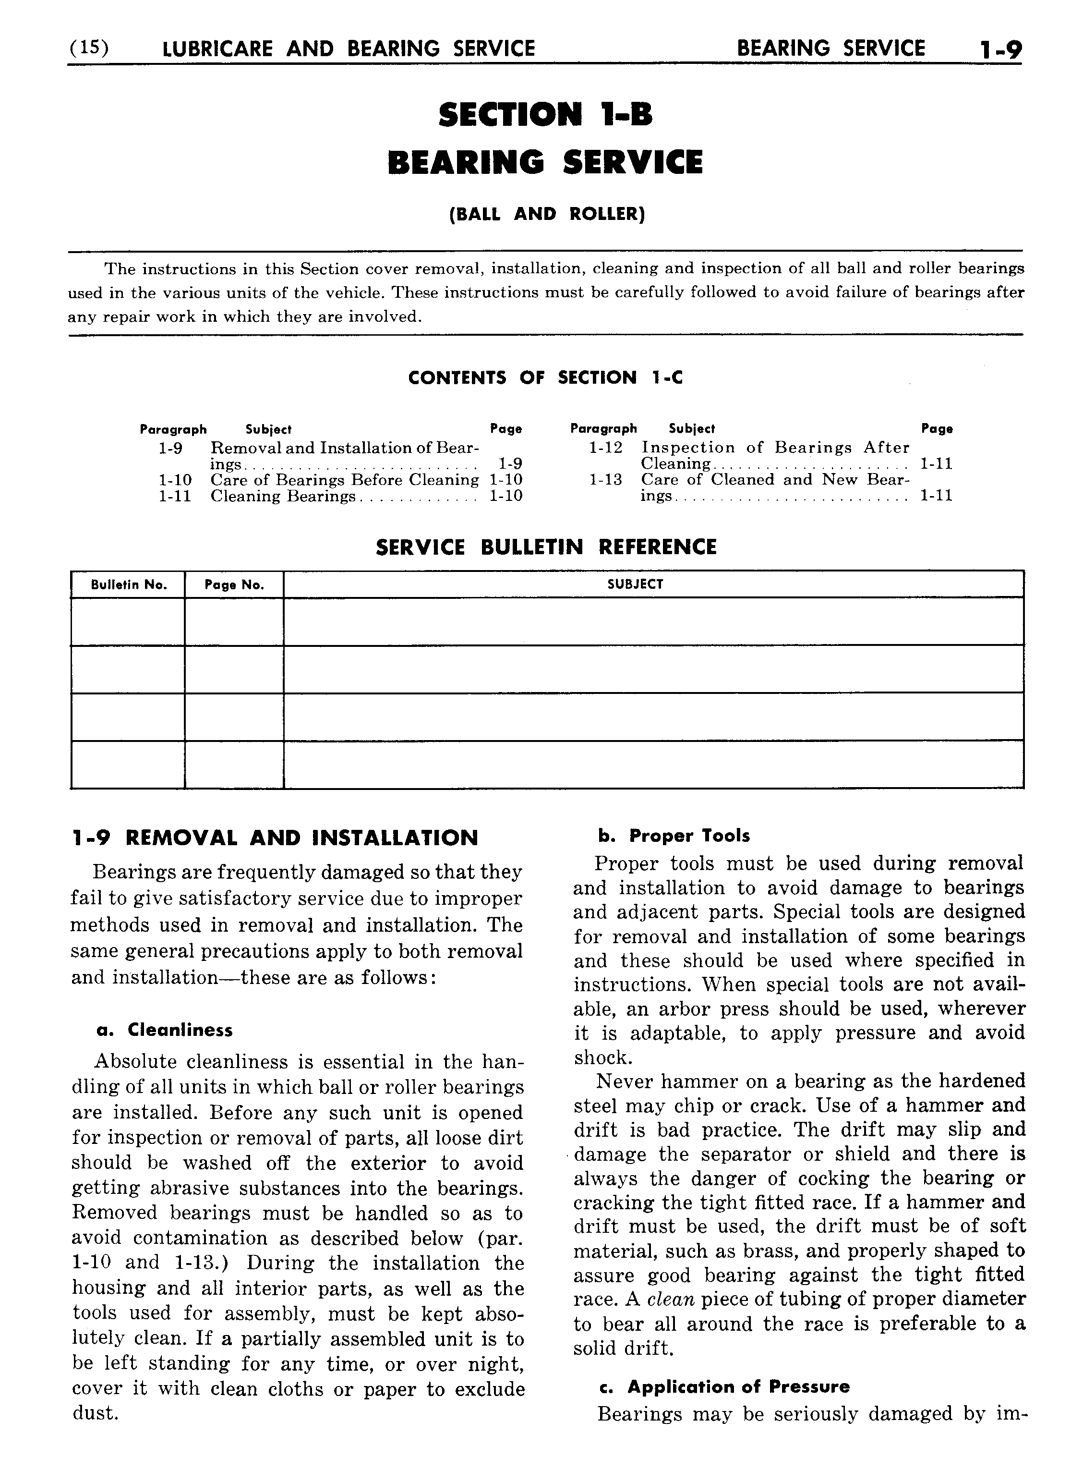 n_02 1951 Buick Shop Manual - Lubricare-009-009.jpg